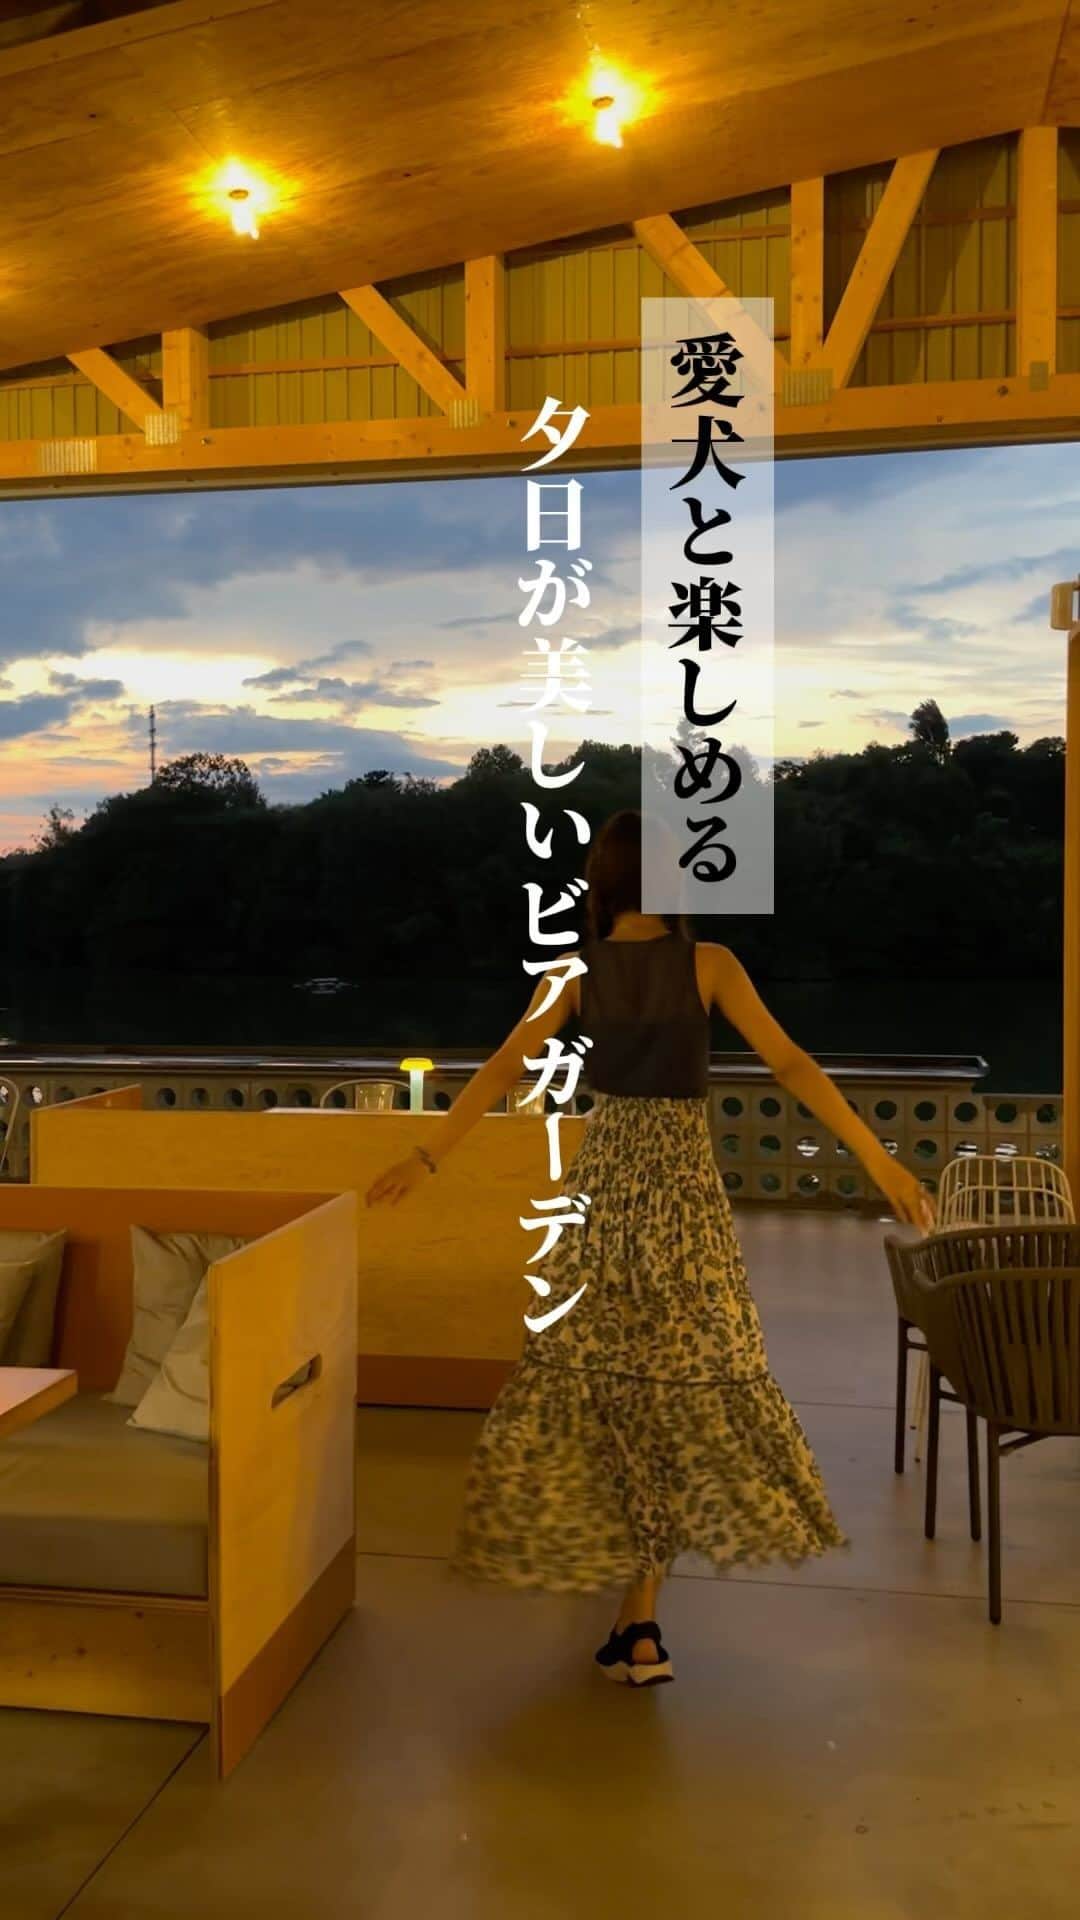 Yuika Matsuのインスタグラム：「ビアガーデン🍻🐶 〈#大阪カフェ#鶴見緑地公園#botanicalhouse 〉 　　　 鶴見緑地公園内にある 「鶴見ノ森迎賓館」プロデュース カフェ&レストラン @botanicalhouse_cafe   こちらで10月31日まで ハイボール・ビアテラスが開催中！ 　 ドリンク90分飲み放題（お席120分） シェフこだわりのコース料理付き🍳 　 魚介のアヒージョやポークバックリブなど… 色とりどりのサラダや特製パスタも🍝♡ 　 とにかくめちゃくちゃ豪華でした！ 　 ワンちゃん🐶も一緒に座れる席があるから 愛犬も連れて楽しめました！！ 　 めちゃくちゃ楽しかったーー！ 　  　┈┈┈┈┈┈┈ ❁ ❁ ❁ ┈┈┈┈┈┈┈┈ 【BOTANICAL HOUSE】 📍 〒538-0036 大阪市鶴見区緑地公園2-163 ☎️ 06-6967-8399 🕛 平日 11:00～18:00 / 土日祝 11:00～21:00 ビアテラスは 17時〜19時スタート(30分毎の受付)　 ＊水曜定休 　　各2時間制　フリードリンク(L.O.は30分前) 料金： ・鶏プラン：5,000円(税込)　 ・牛プラン：6,000円(税込)　  ◇ハッピーアワー 16時 or 16時30分スタートなら 鶏プラン：4,500円(税込)　 牛プラン：5,400円(税込)   🫖《料理》 冷菜：チョップドサラダ、ボタニカルハウス風カプレーゼ、ナチョス 温菜：ワッフルポテトフライ、魚介と野菜のアヒージョ、ポークバックリブ～自家製美味醤 パスタ：本日のパスタ メイン(選べる2種)： ・鶏プラン:ケイジャンチキンソテー ・牛プラン:牛リブロースソテー（上記料金にて提供）  《ドリンク》 ビール、ハイボール、ワイン（赤・白）、チューハイ、焼酎（芋・麦）、カクテル各種 ソフトドリンク/ オレンジジュース・グレープフルーツジュース・アップルジュース・烏龍茶・コーラ・ジンジャーエール　ノンアルコールビール ┈┈┈┈┈┈┈ ❁ ❁ ❁ ┈┈┈┈┈┈┈┈  予約：下記予約サイトでの事前予約制  　 　 #ボタニカルハウス#鶴見綠地カフェ #鶴見綠地公園#大阪カフェ #大阪ランチ  #ランチ#大阪スイーツ #ボタニカル  #ランチ巡り #鶴見緑地ランチ #鶴見緑地スイーツ #ランチタイム #ペット可  #ビアテラス#大阪ビアガーデン  #愛犬とお出かけ」